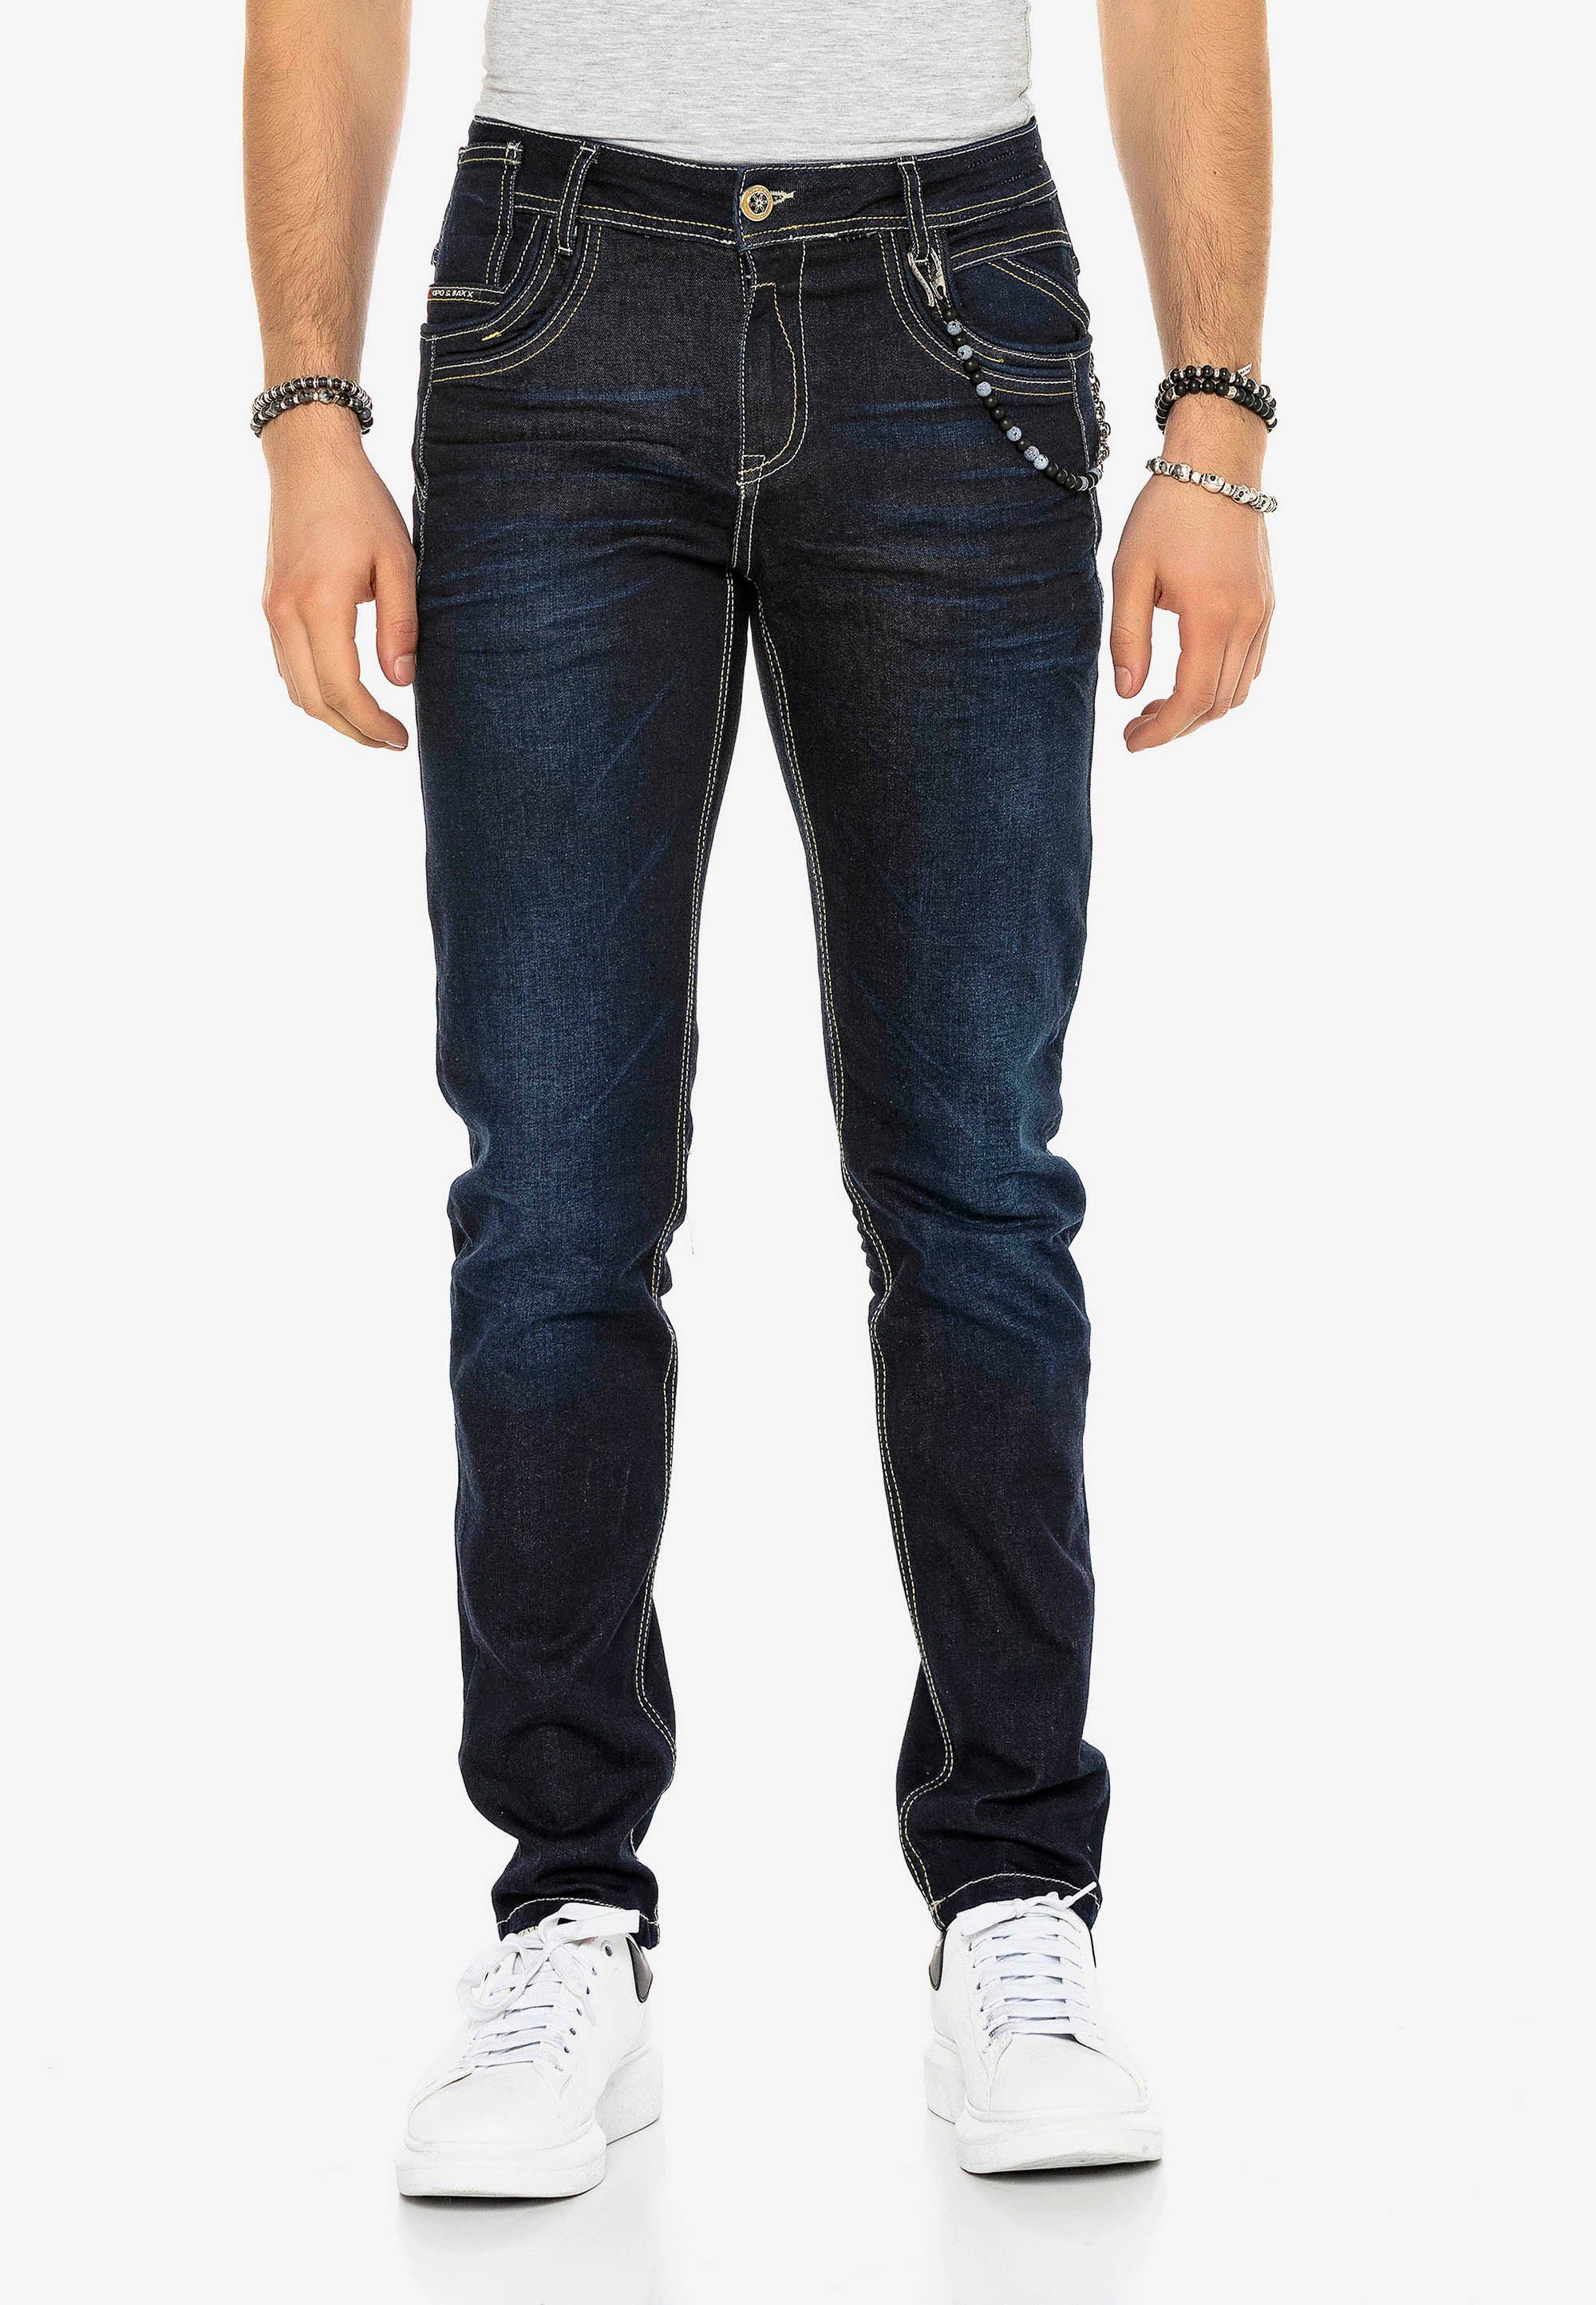 Straight Cipo stilvollen & Jeans mit Baxx in Kontrastnähten Fit Bequeme